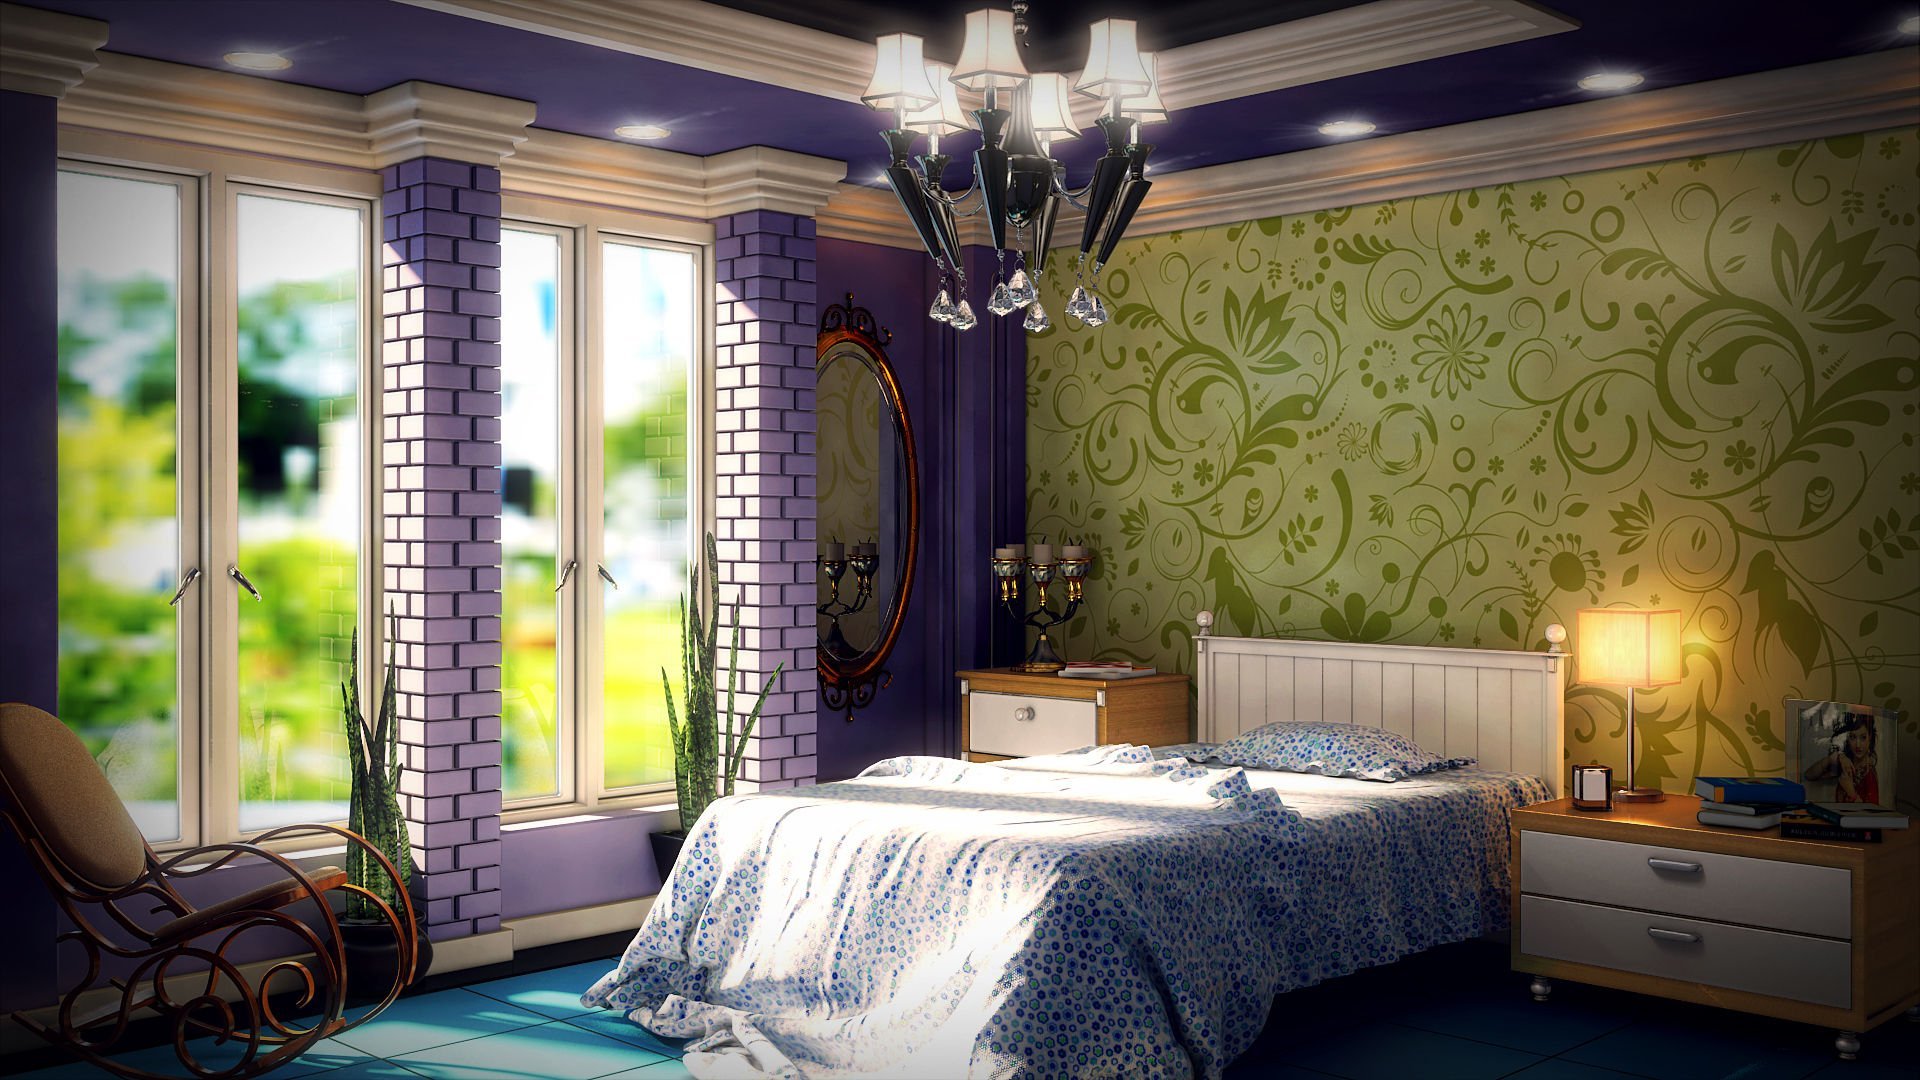 Комбинирование обоев в спальне: реальные примеры сочетания двух цветов, модные тенденции, фото лучших идей и новинок